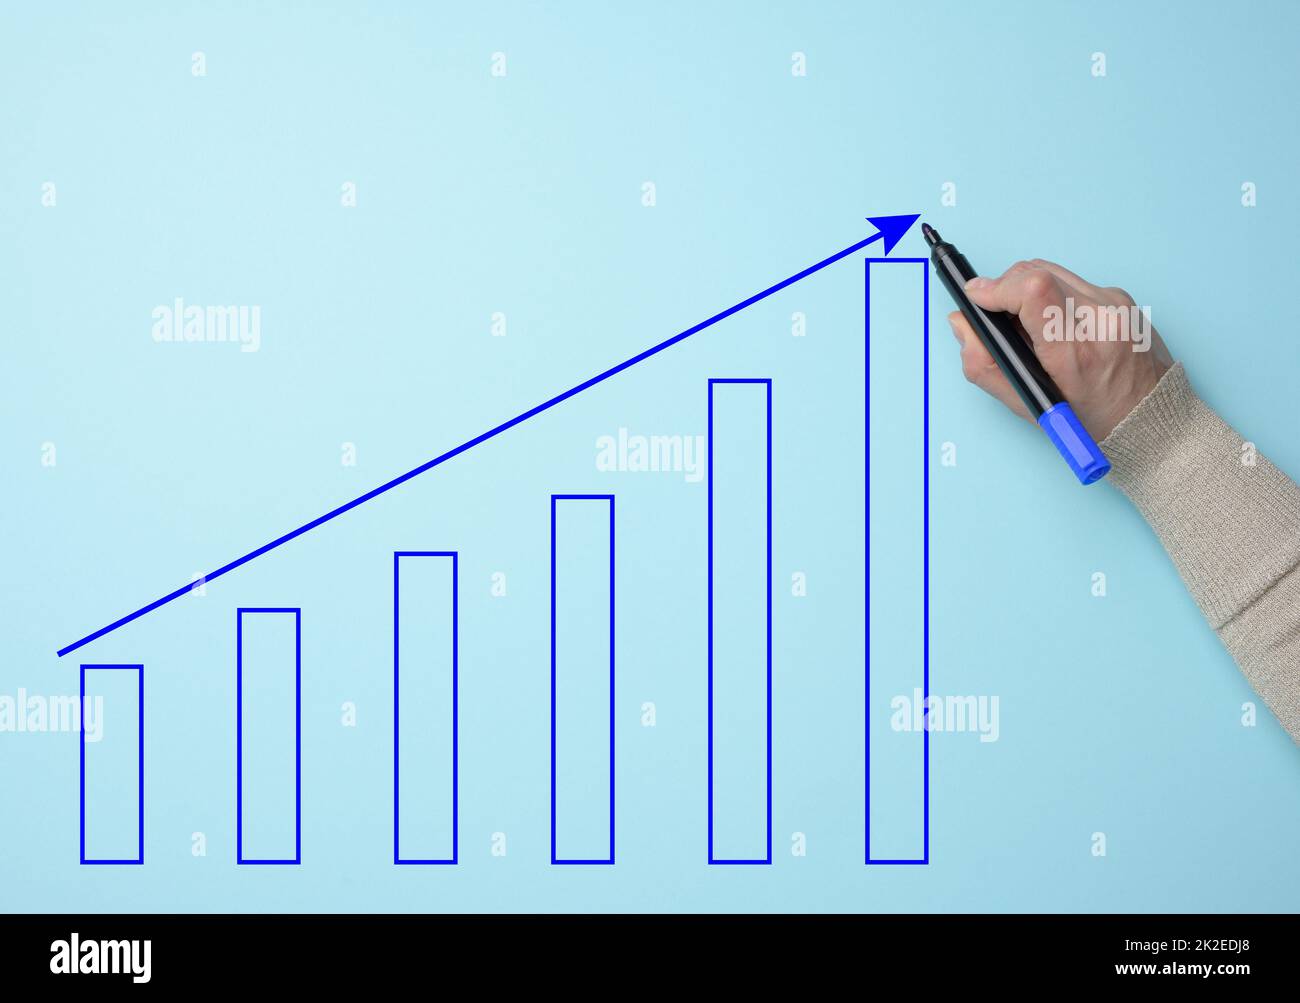 Graphique avec des indicateurs de croissance et une main femelle avec un marqueur sur fond bleu. Le concept de ventes réussies dans les affaires, l'inflation et la hausse des prix Banque D'Images